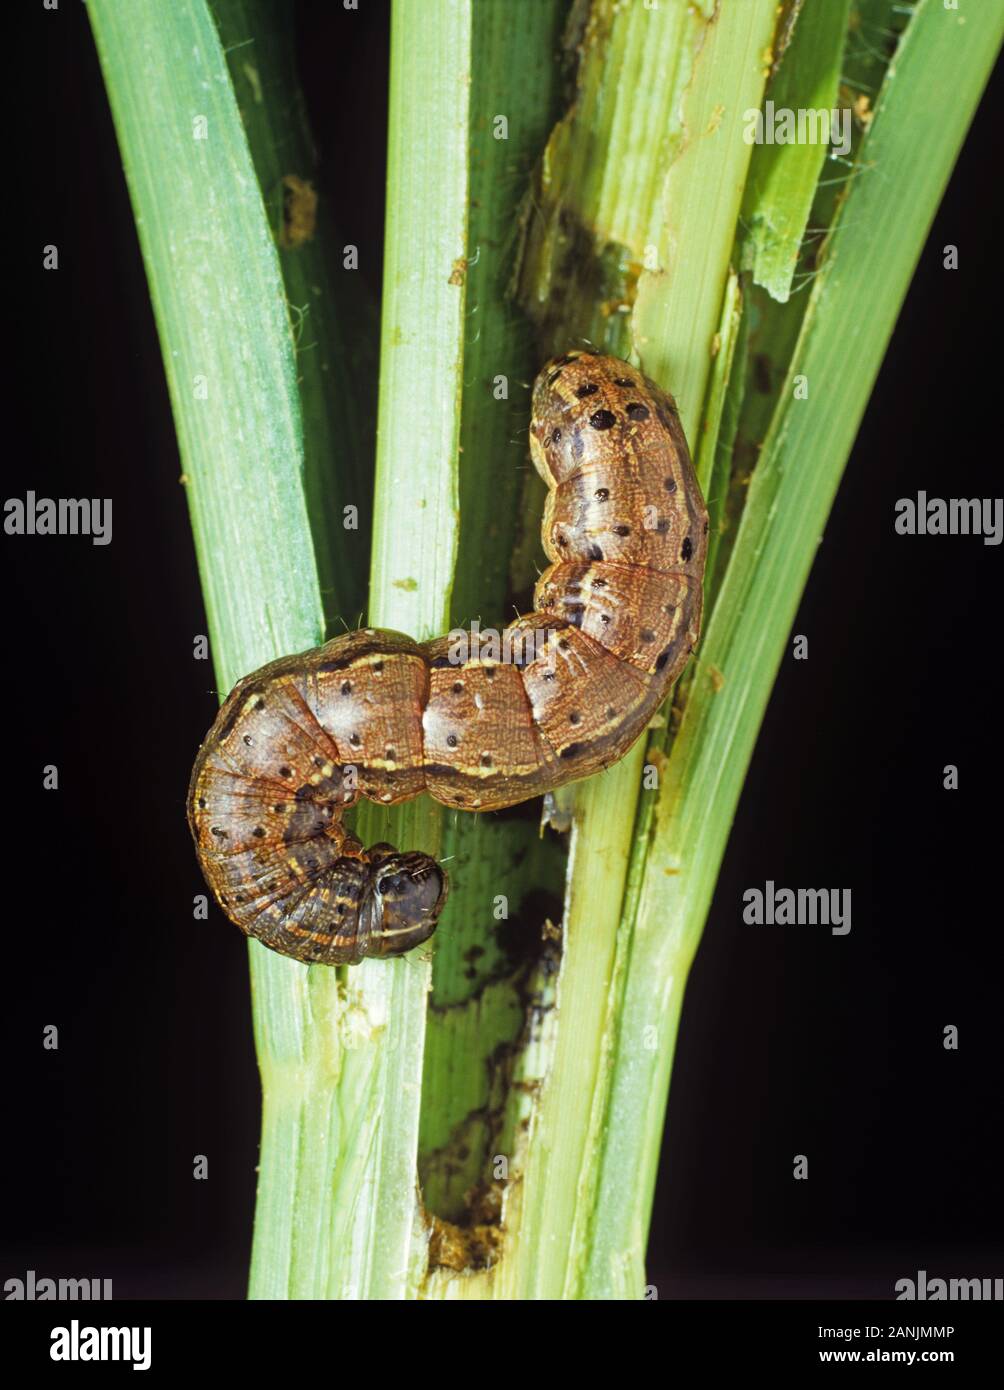 Herbst (Spodoptera frugiperda) armyworm Caterpillar Fütterung mit Mais oder Getreide Stengel und Blätter, North Carolina, USA, Oktober Stockfoto